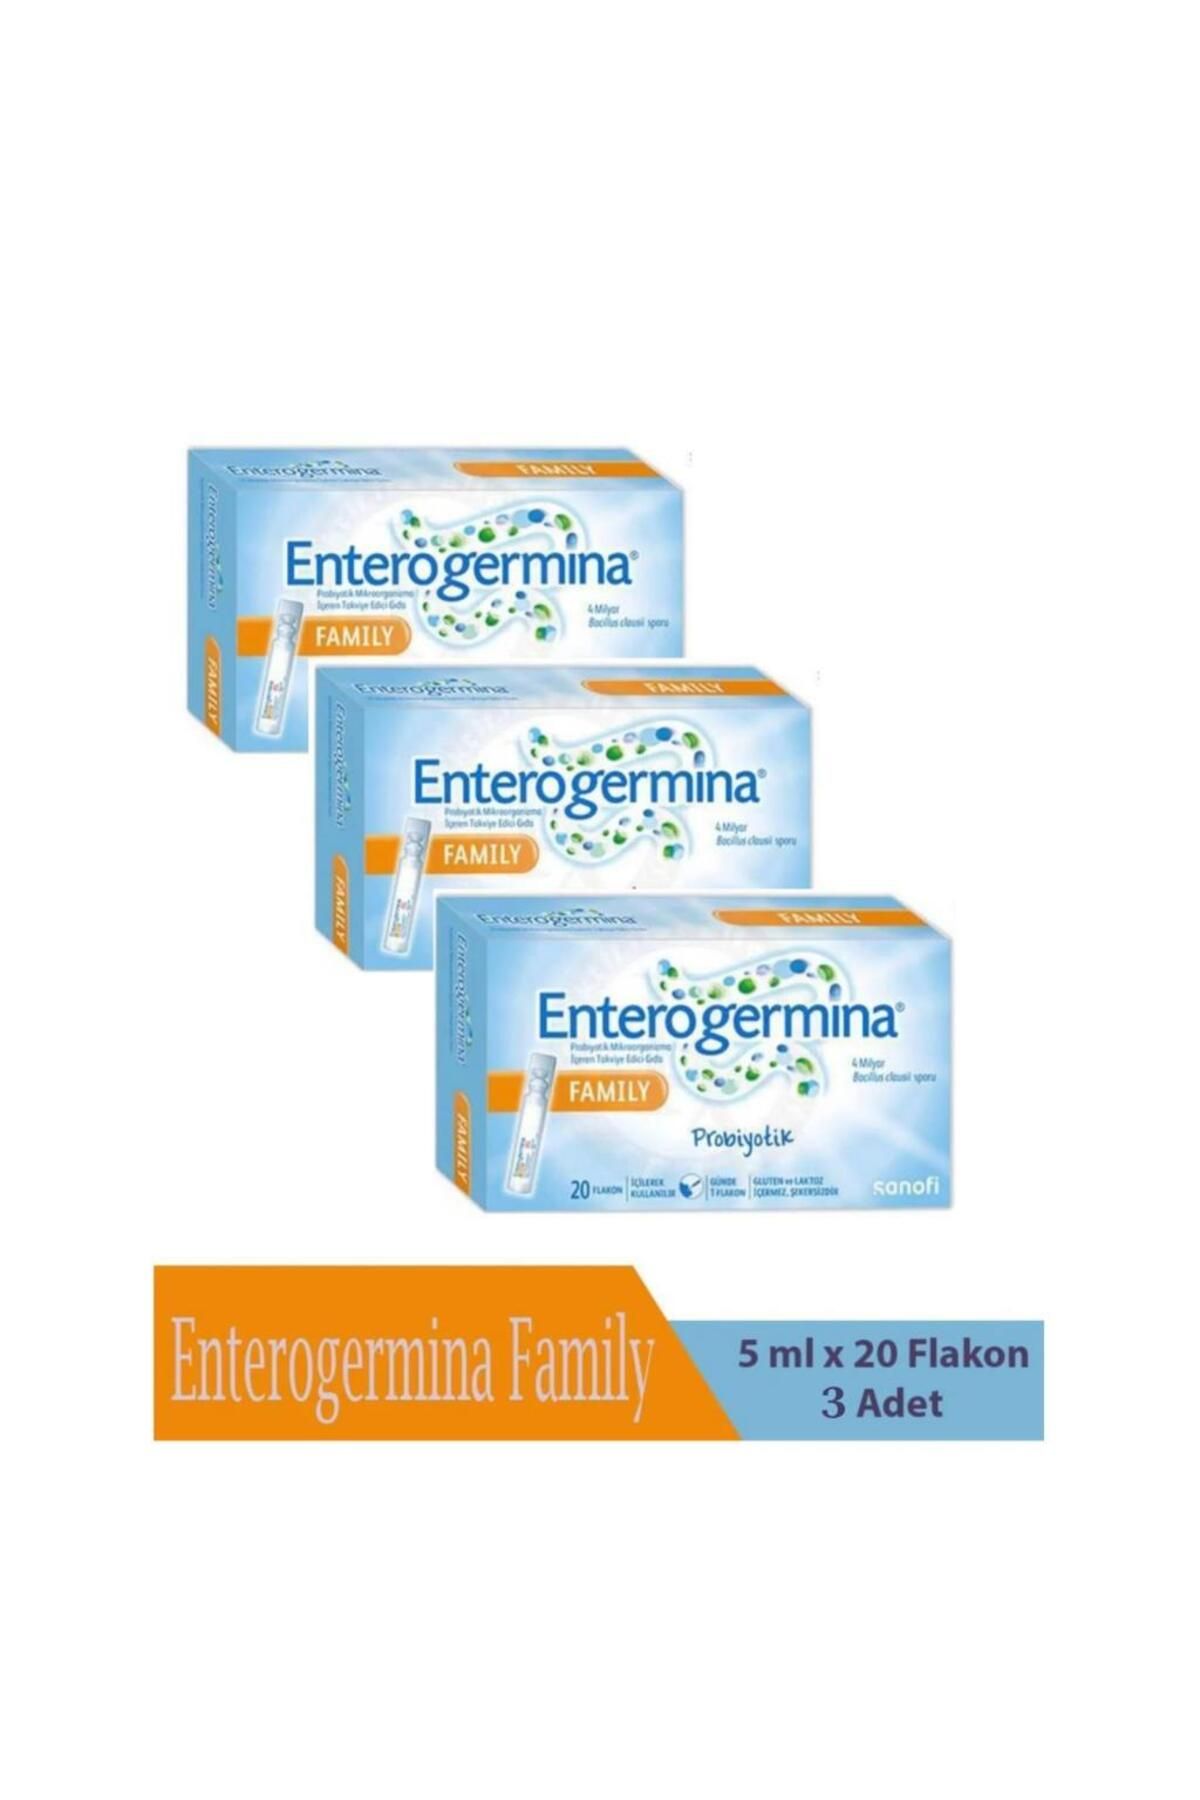 Enterogermina Family 5Ml x 20 Flakon - 3 ADET